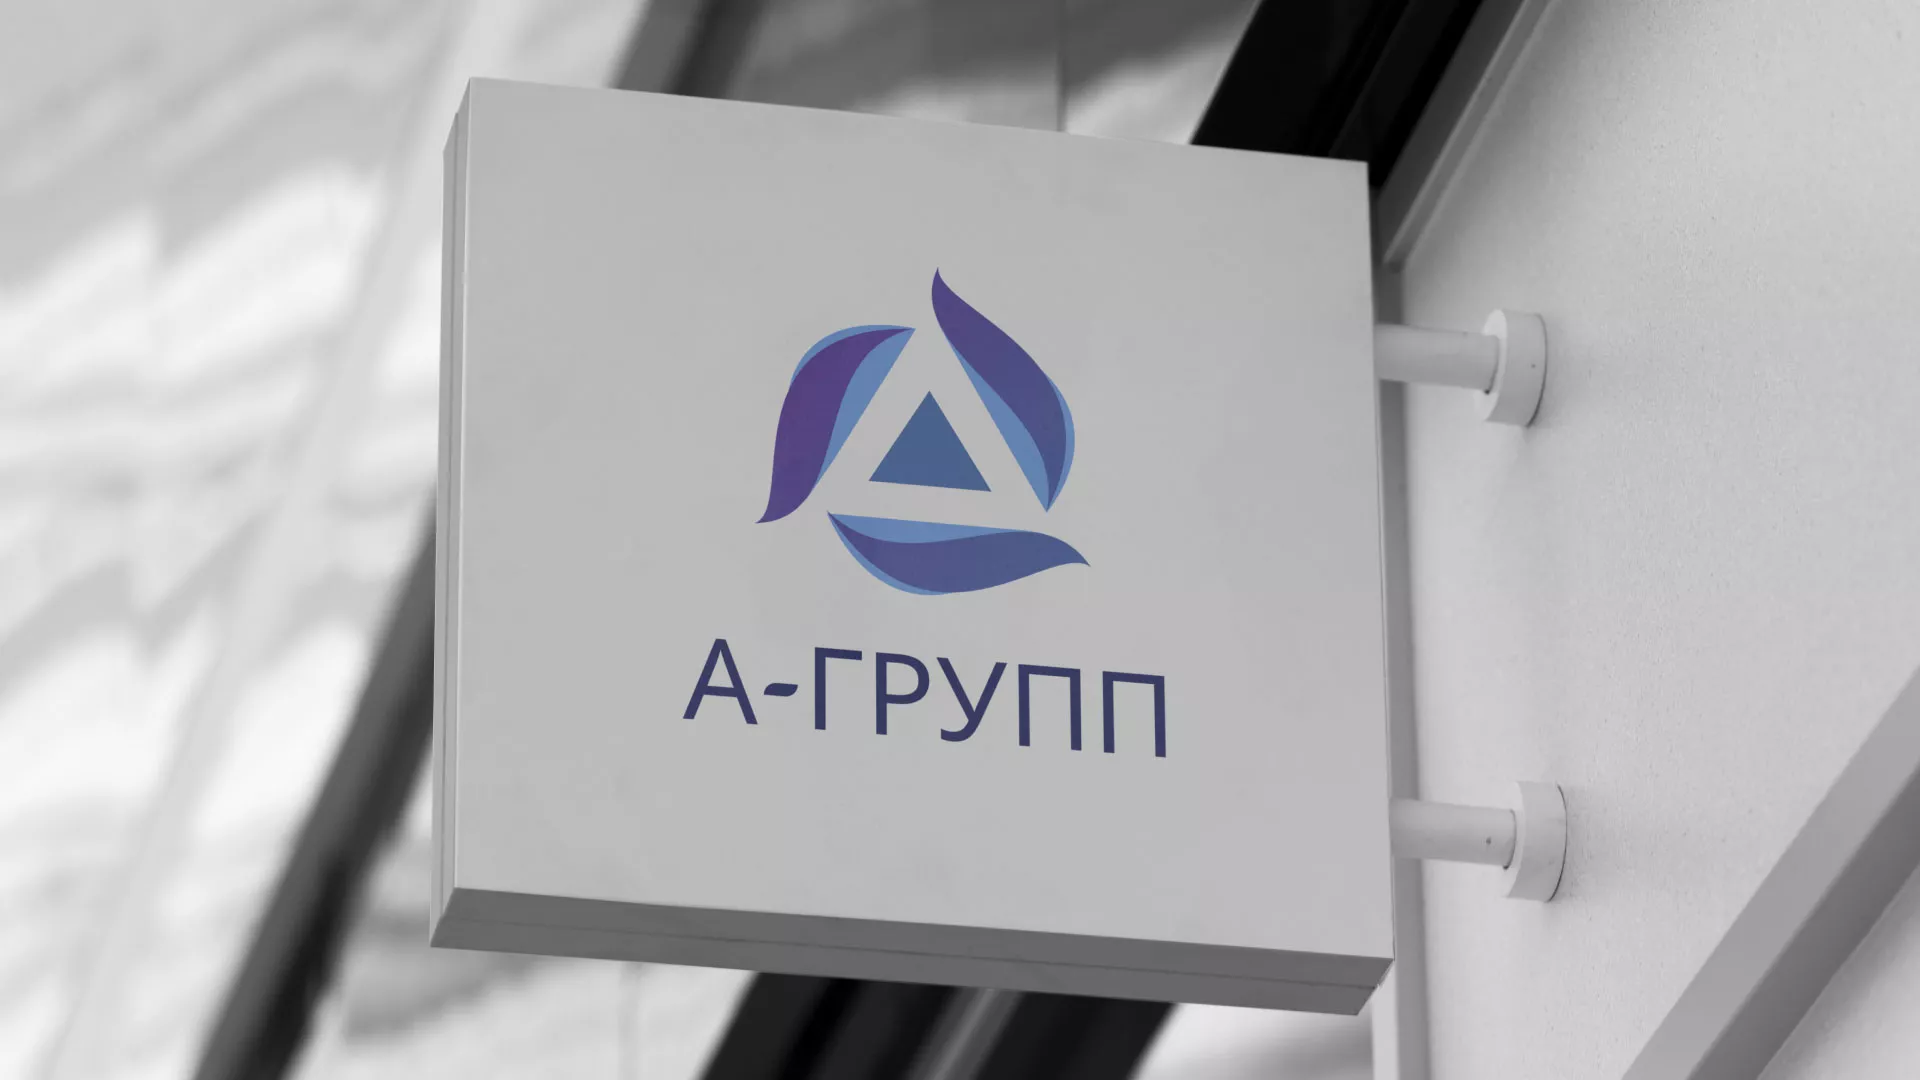 Создание логотипа компании «А-ГРУПП» в Люберцах